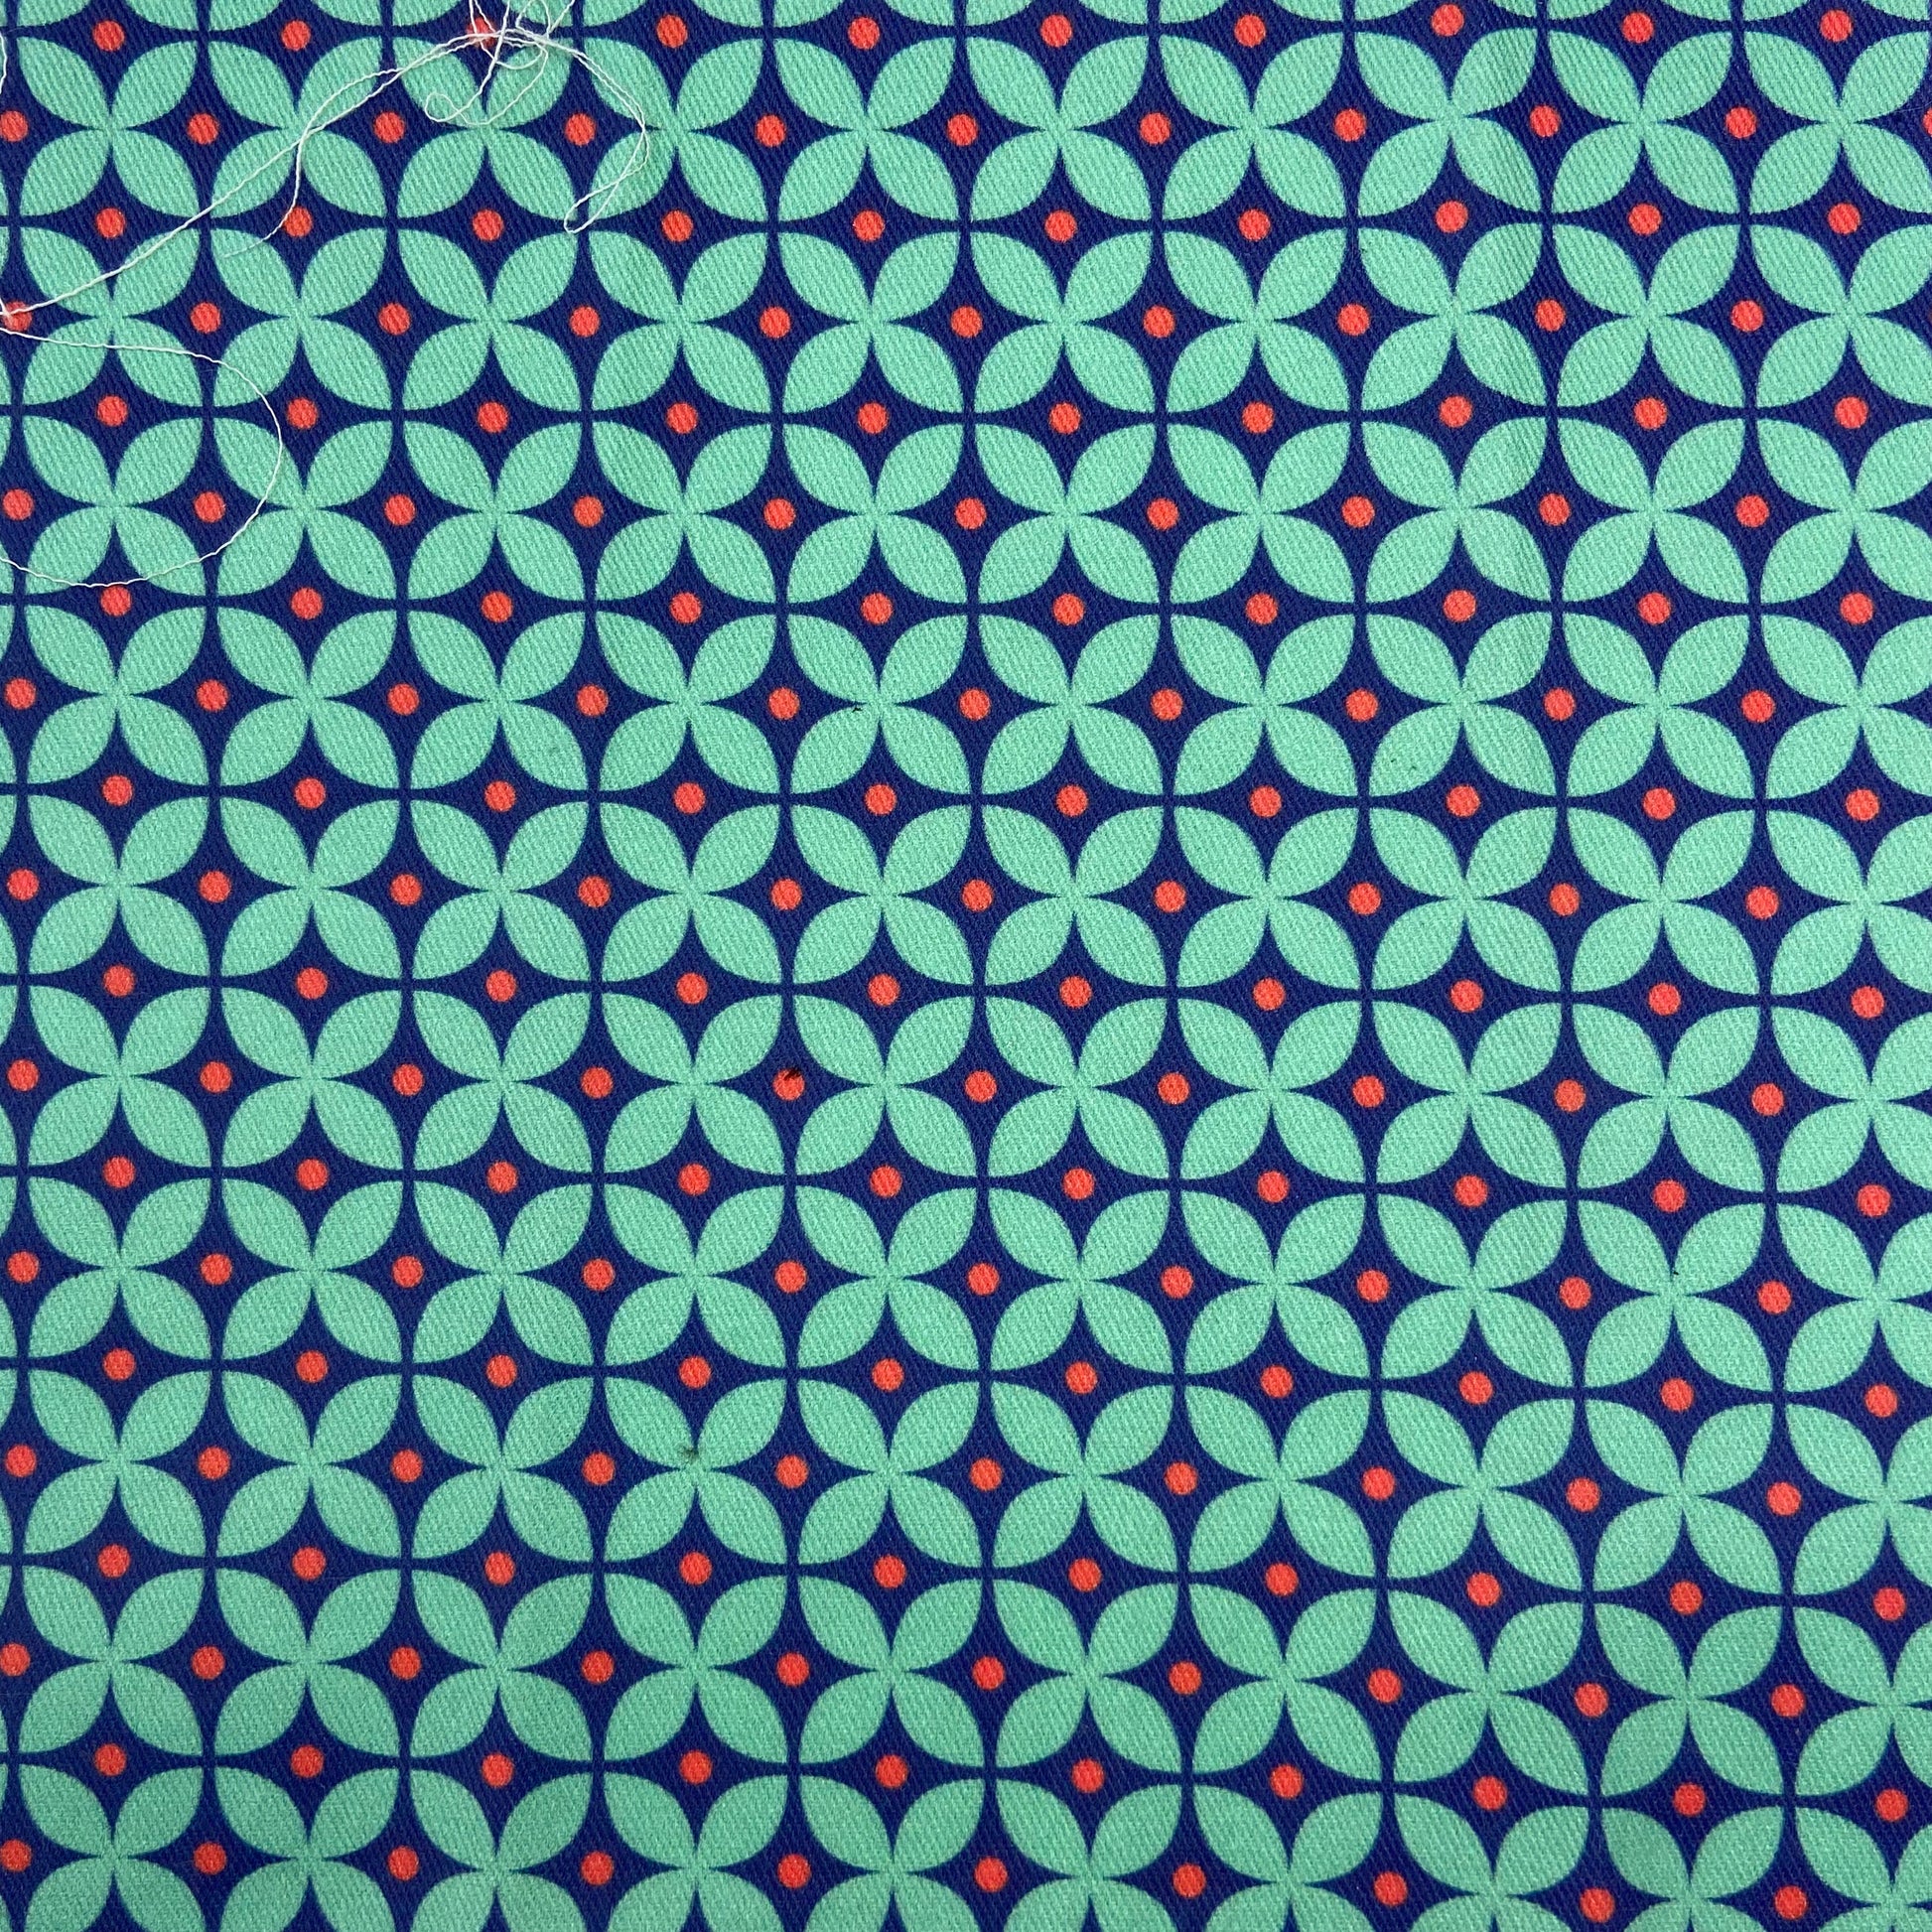 Sergé de coton imprimé motif vintage rétro années 60 carrelage géométrique vert d'eau marine et corail cercles 